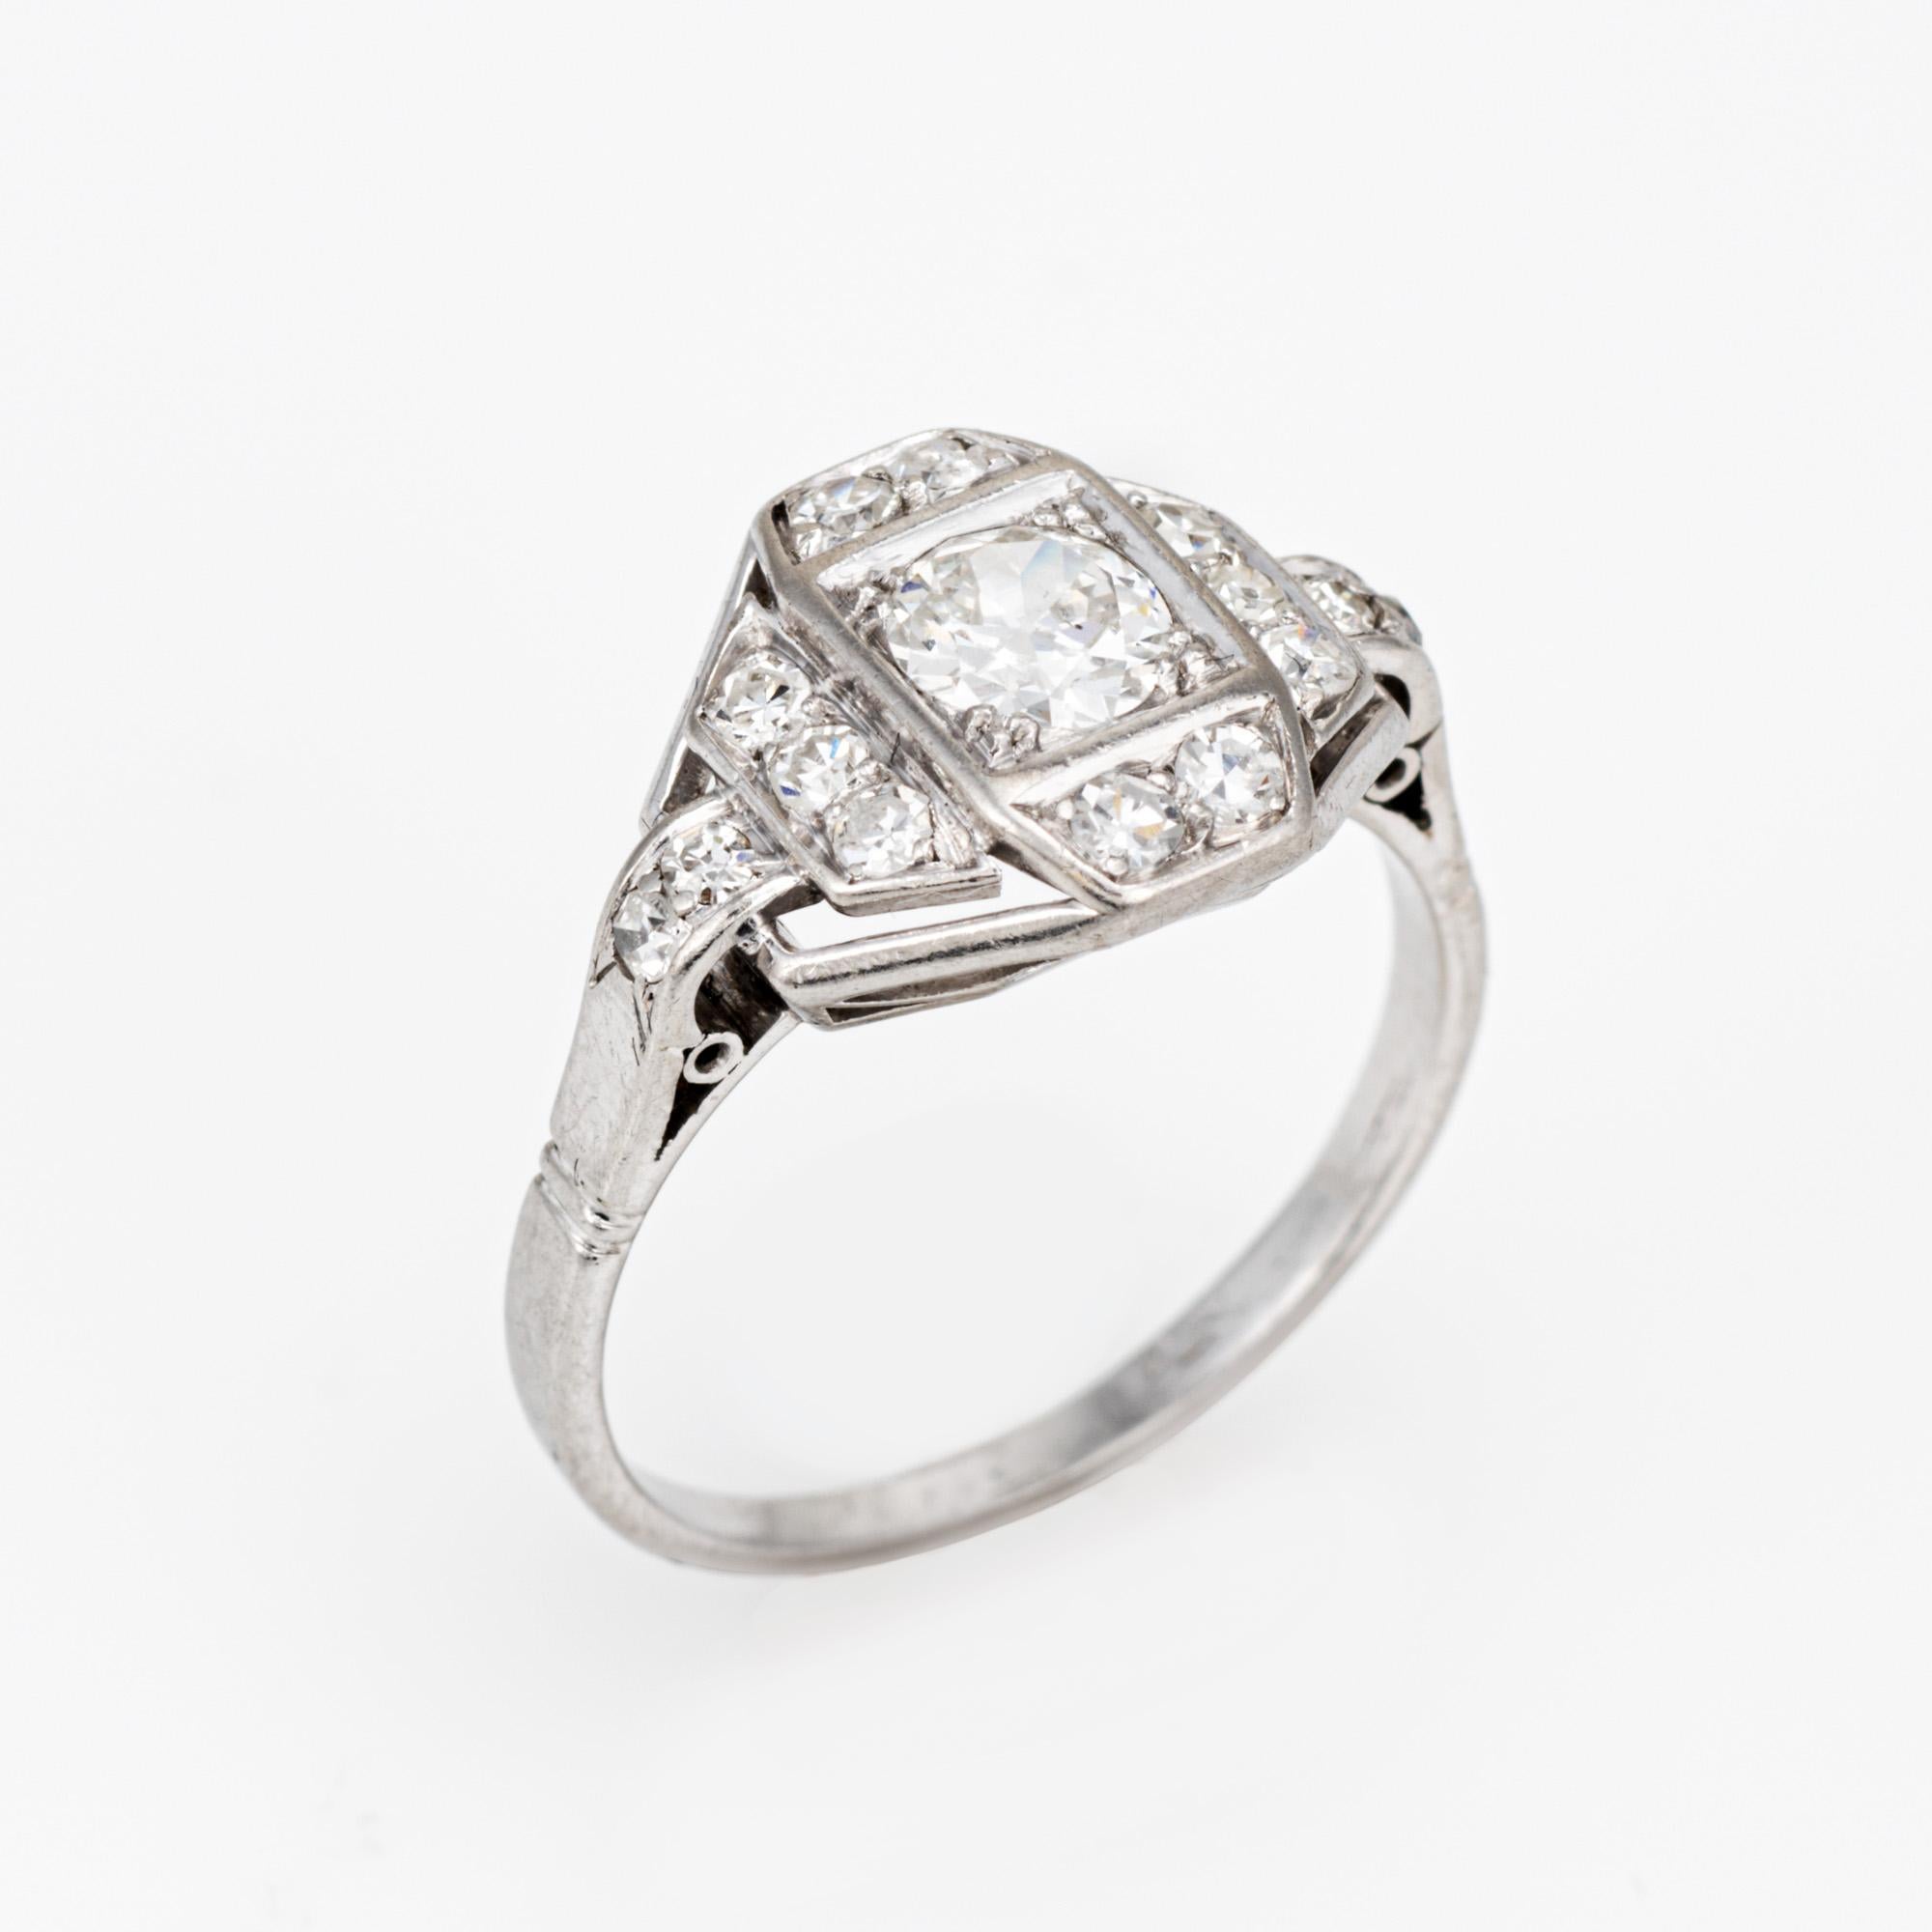 Fein gearbeiteter französischer Art-Déco-Diamantring (ca. 1920 bis 1930) aus 900er Platin. 

Der in der Mitte gefasste alt-europäisch geschliffene Diamant hat schätzungsweise 0,50 Karat und ist mit schätzungsweise 0,14 Karat einfach geschliffenen